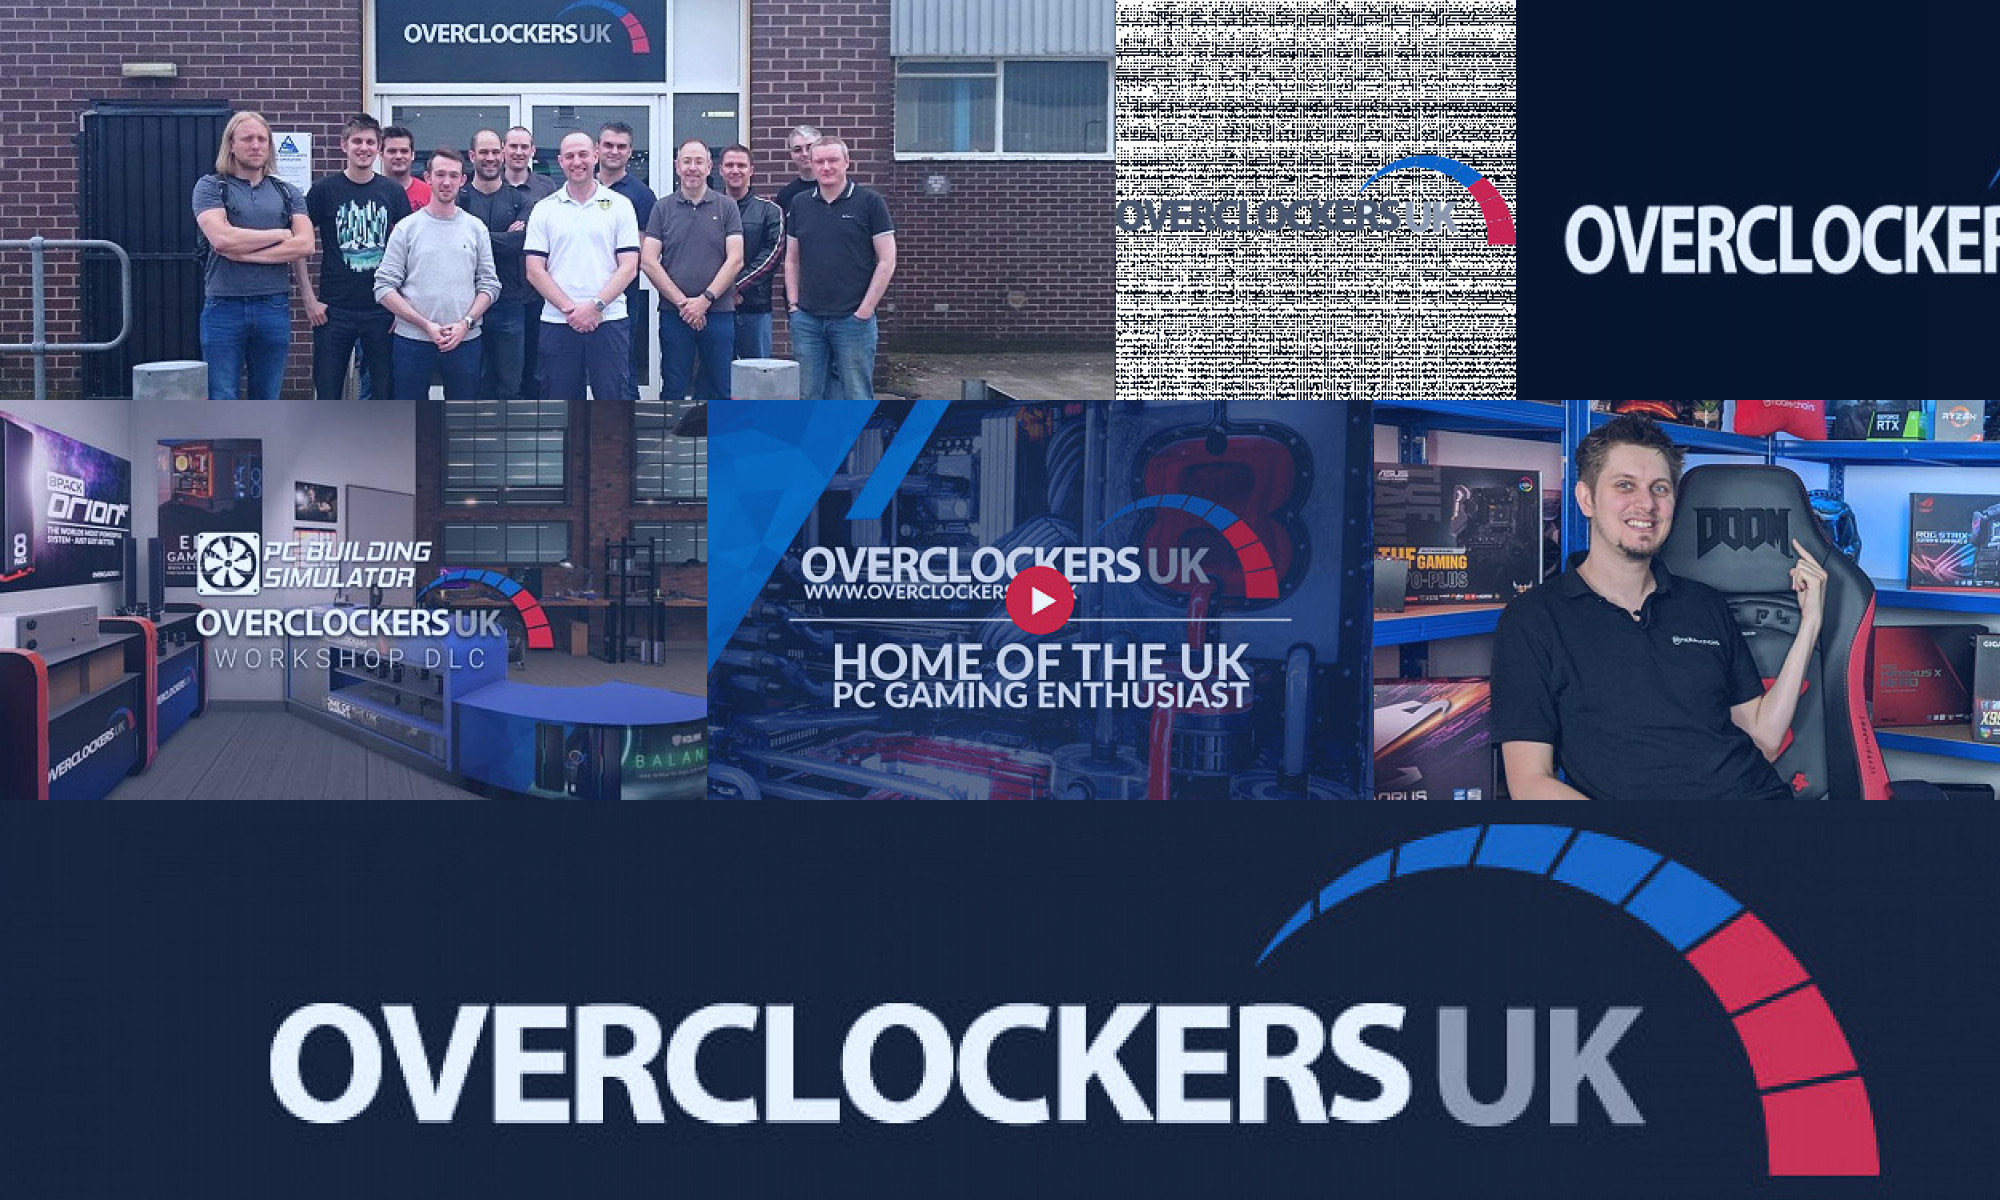 overclockers uk